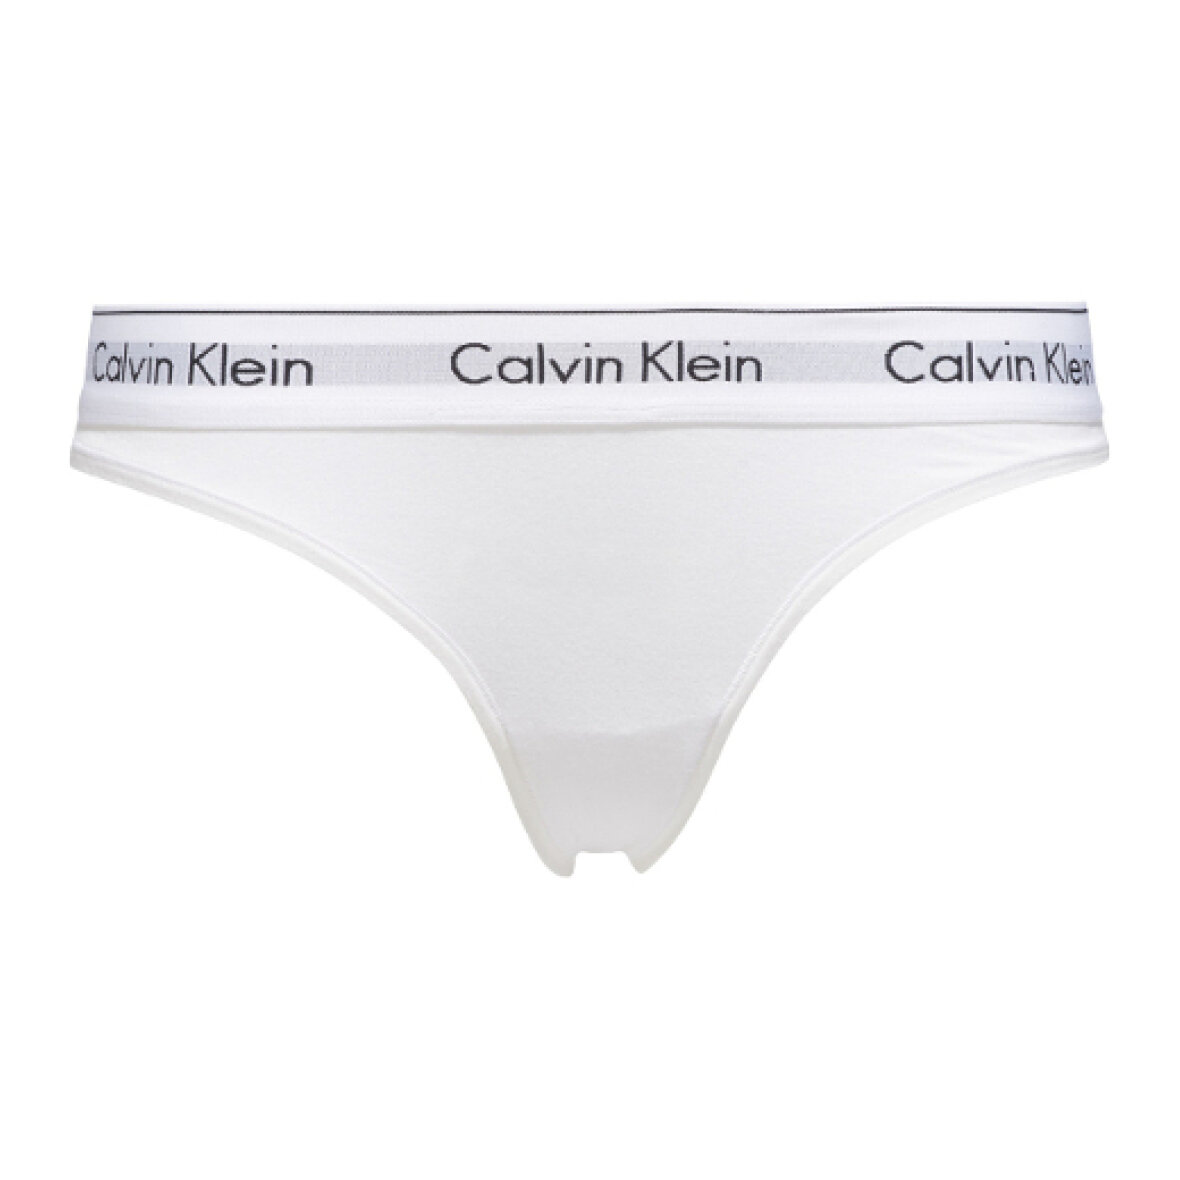 lort Vind nudler Calvin Klein Calvin klein underbukser - Shop online nu